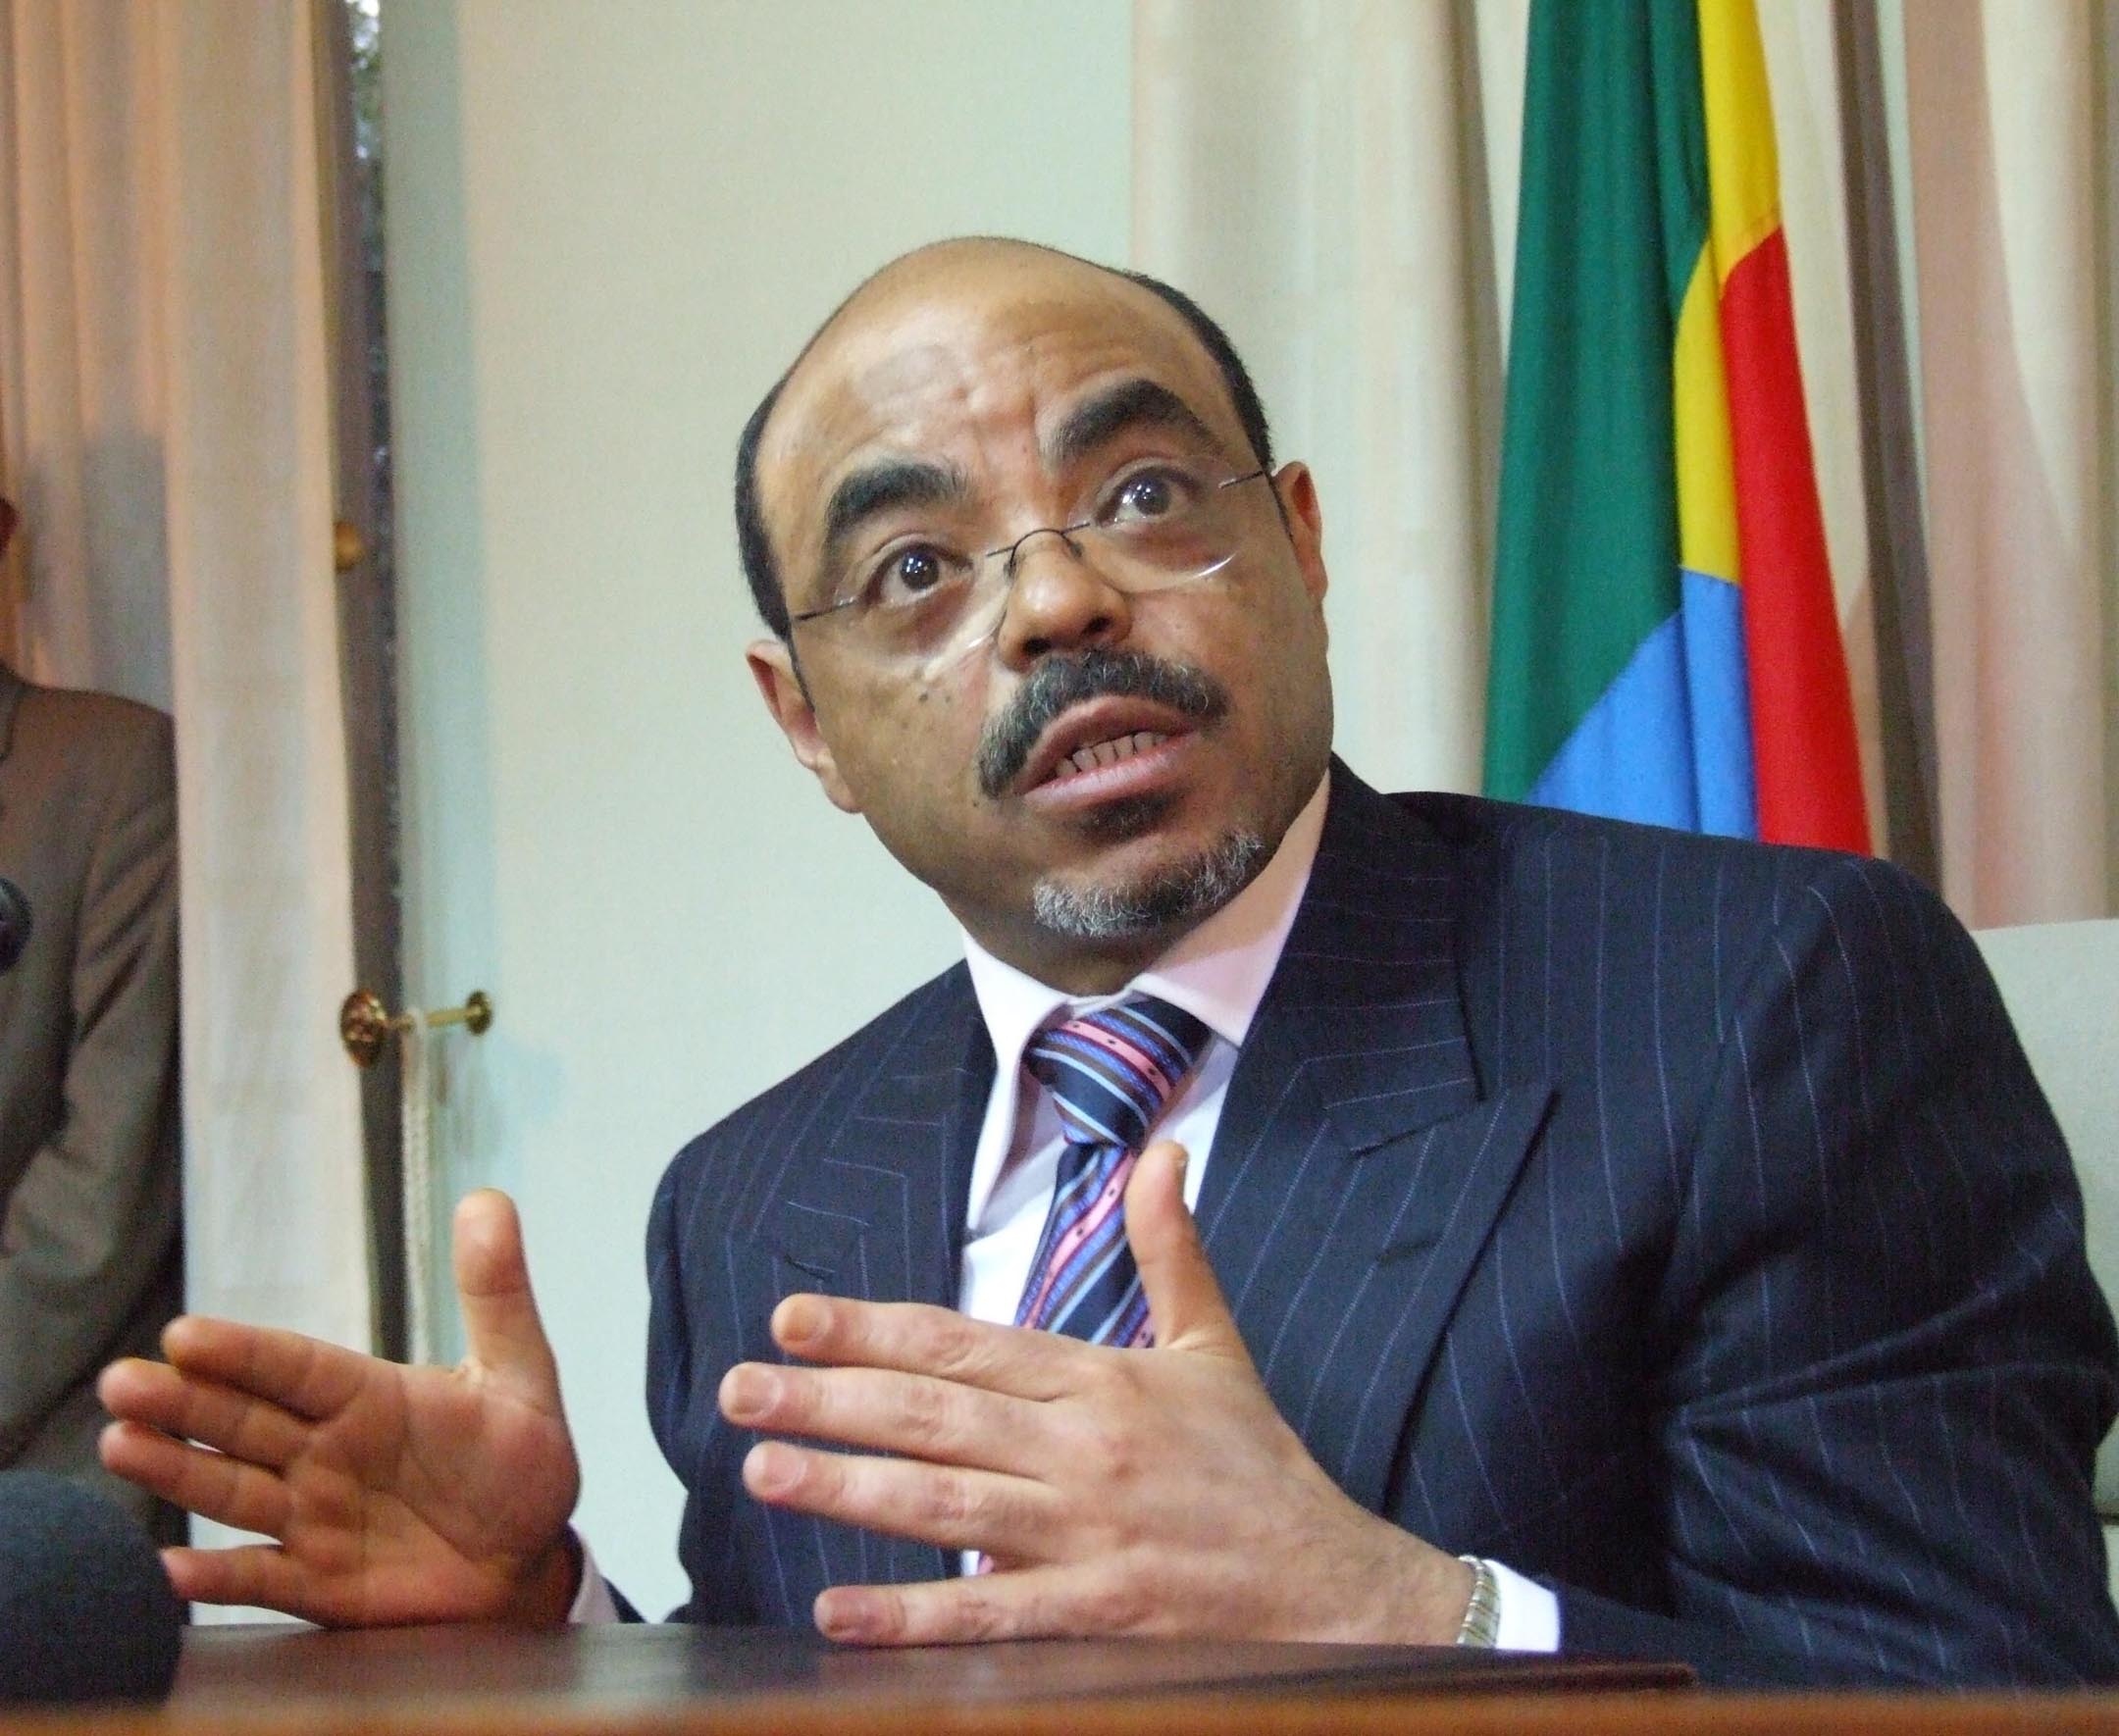 Meles Zenawi - Premiärminister i Etiopien sedan 1995. Innan han blev premiärminister var han president. Det var först efter 1997 som Zenawi kom att betraktas som en diktator. I ett blodigt val 2005 dödades 200 demonstranter av regeringssoldater i Addis Ab